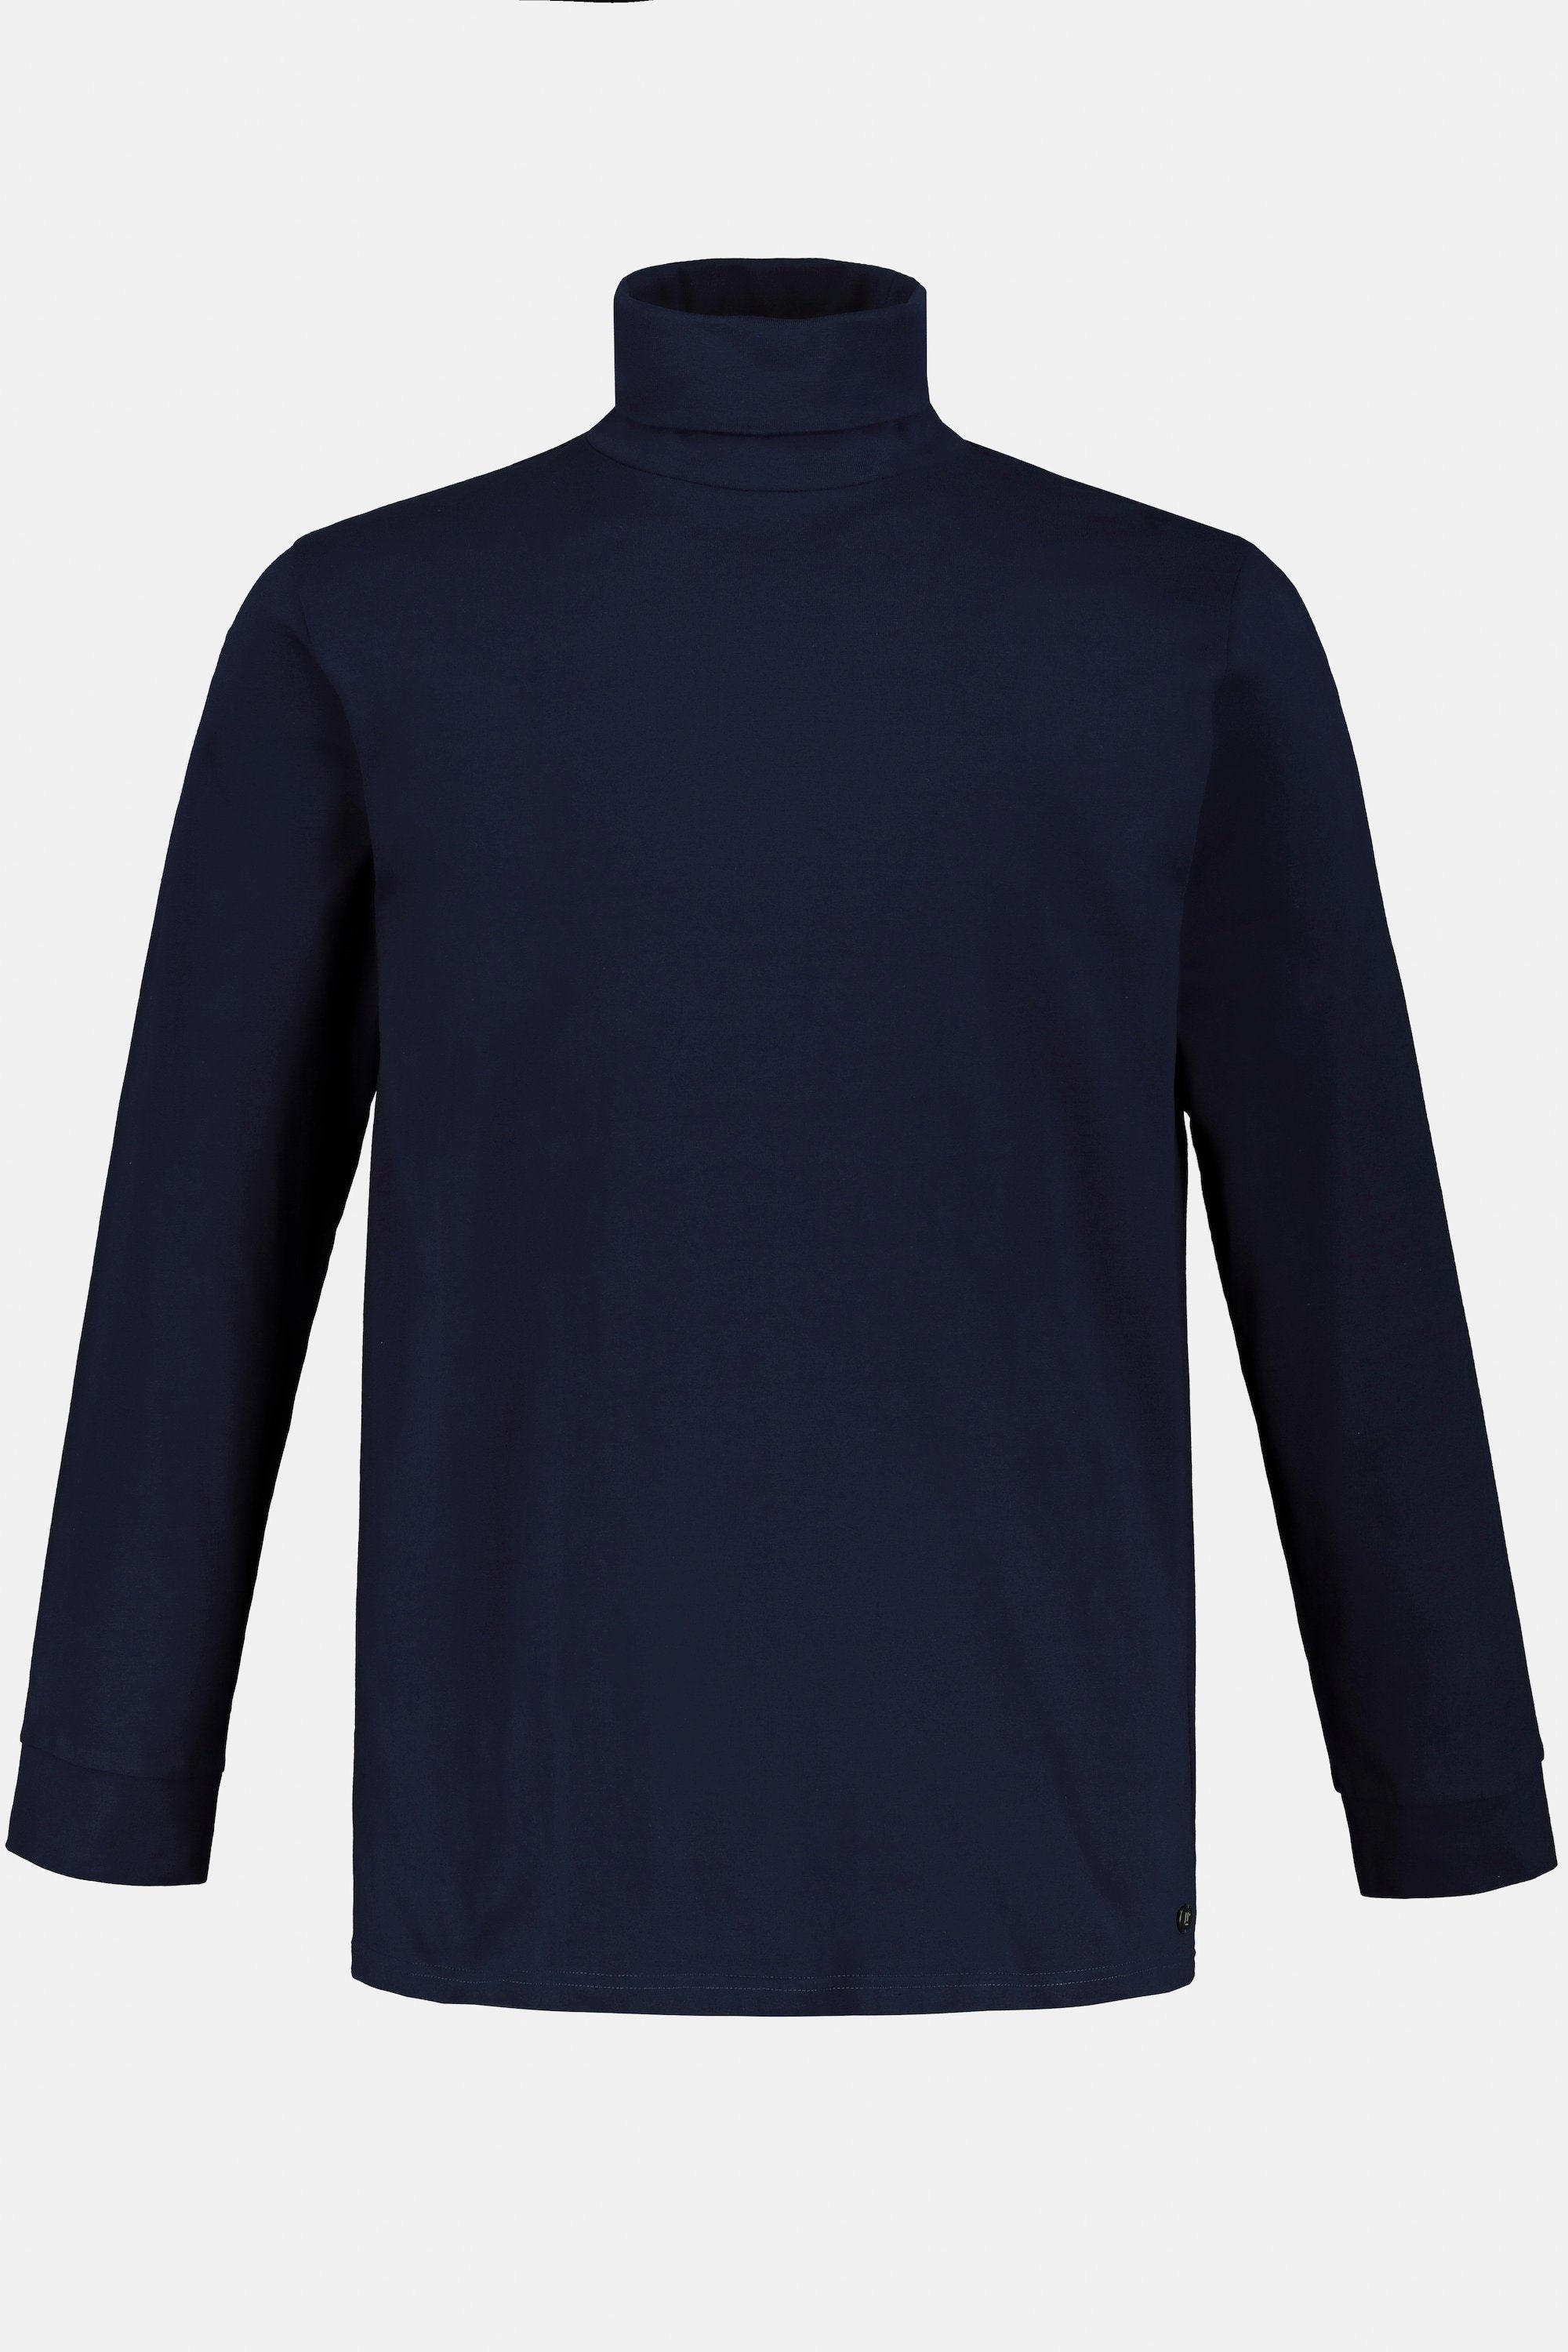 Herren Shirts JP1880 Rundhalsshirt Rollkragen-Shirt Basic Jersey lange Ärmel